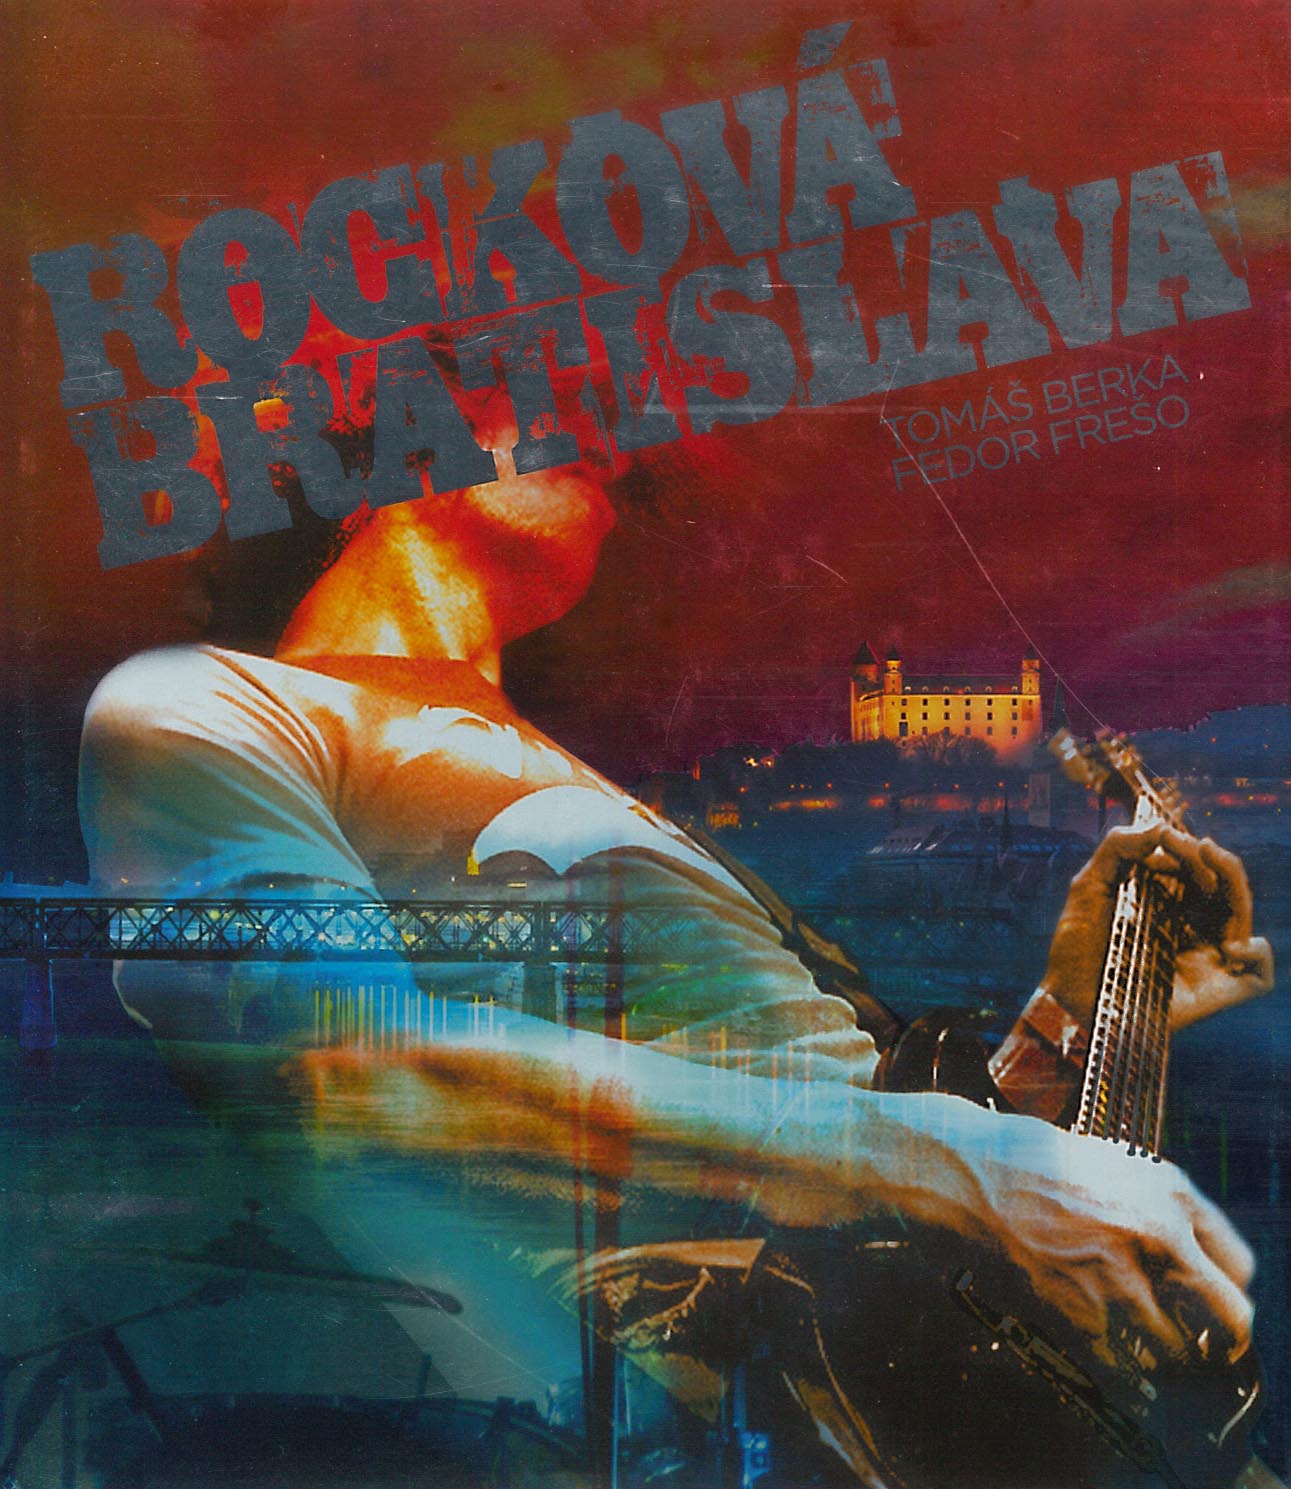 Rocková Bratislava (Fedor Frešo, Tomáš Berka)